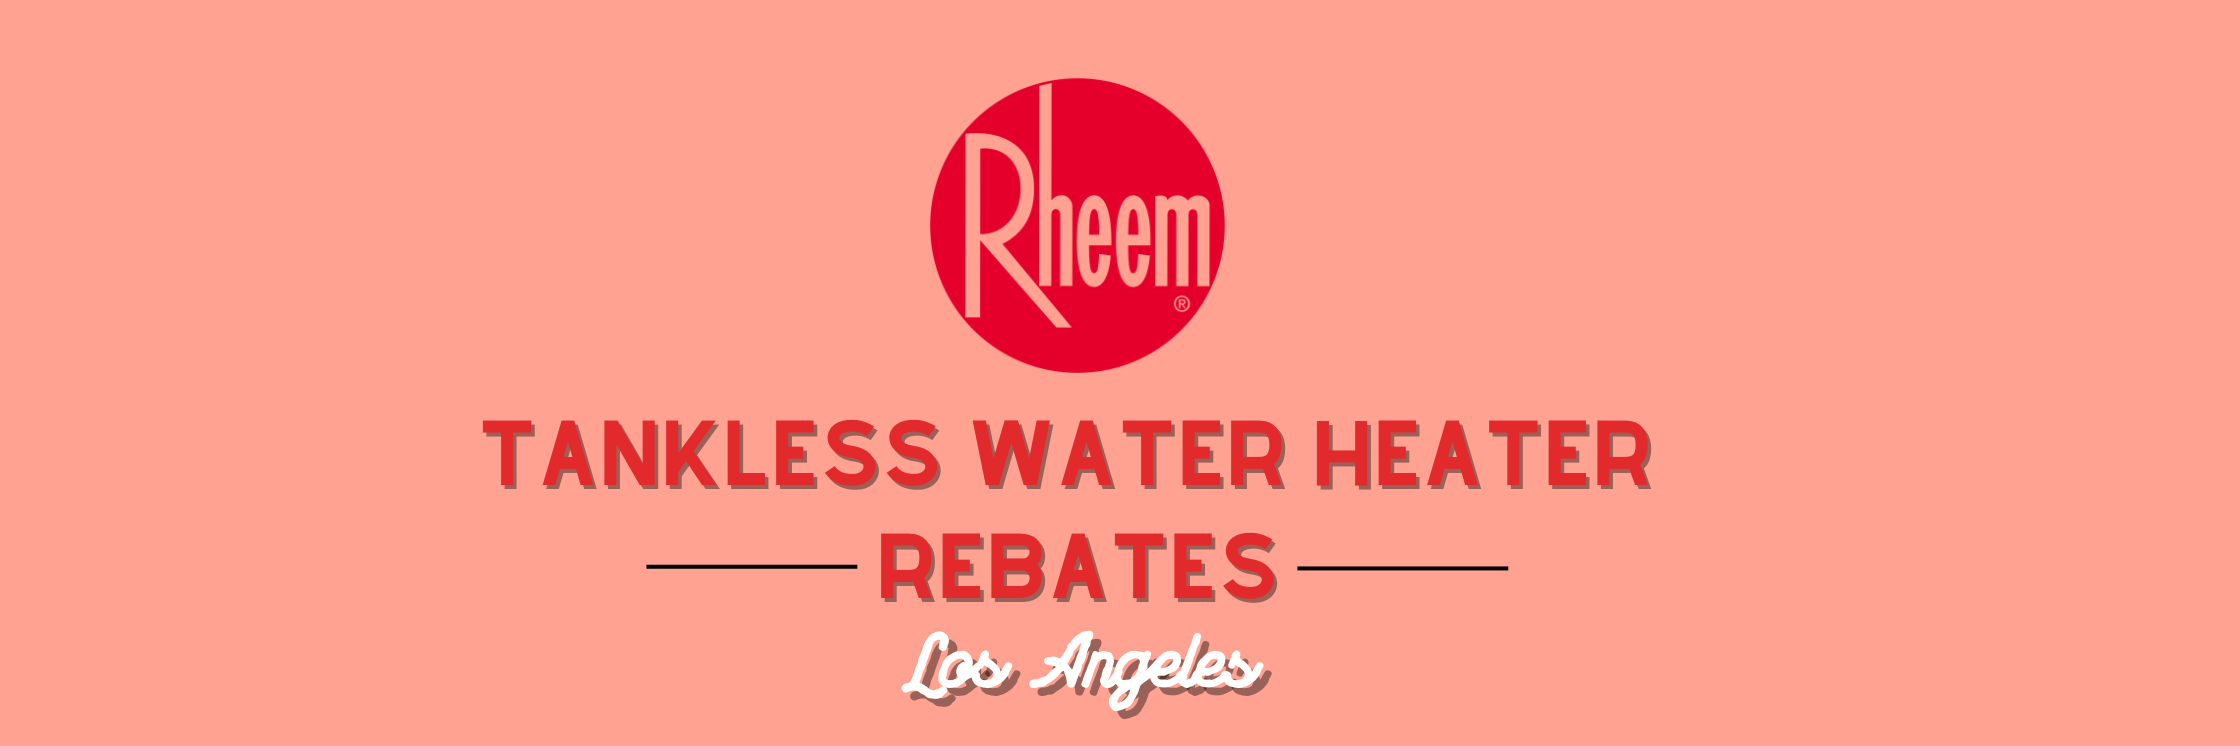 2024 Rheem Tankless Water Heater Rebates for Los Angeles (Video)